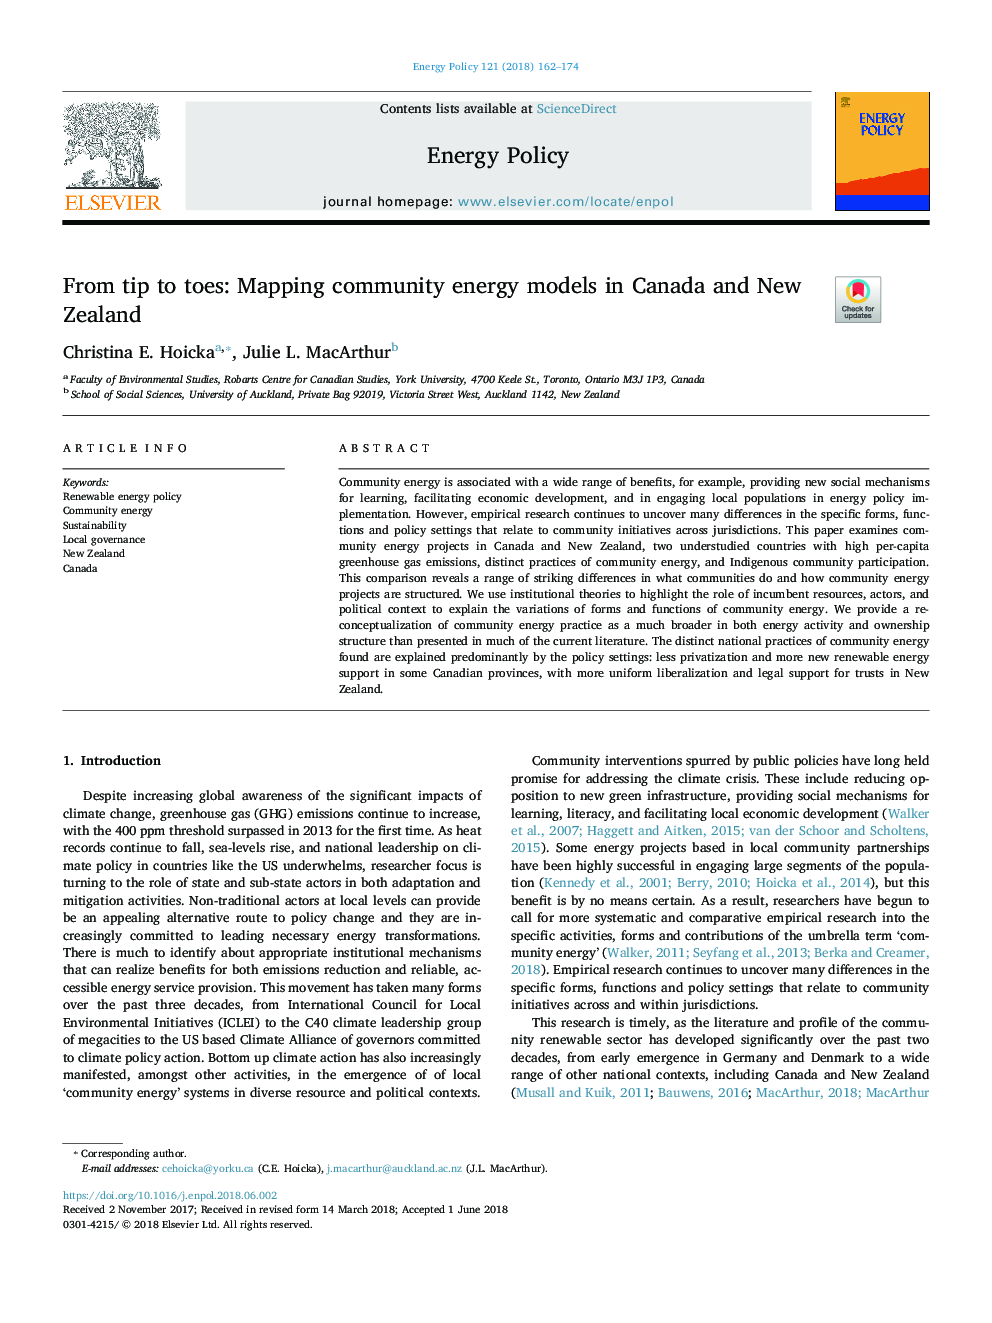 از نوک انگشتان پا: نقشه مدل های انرژی اجتماعی در کانادا و نیوزیلند 